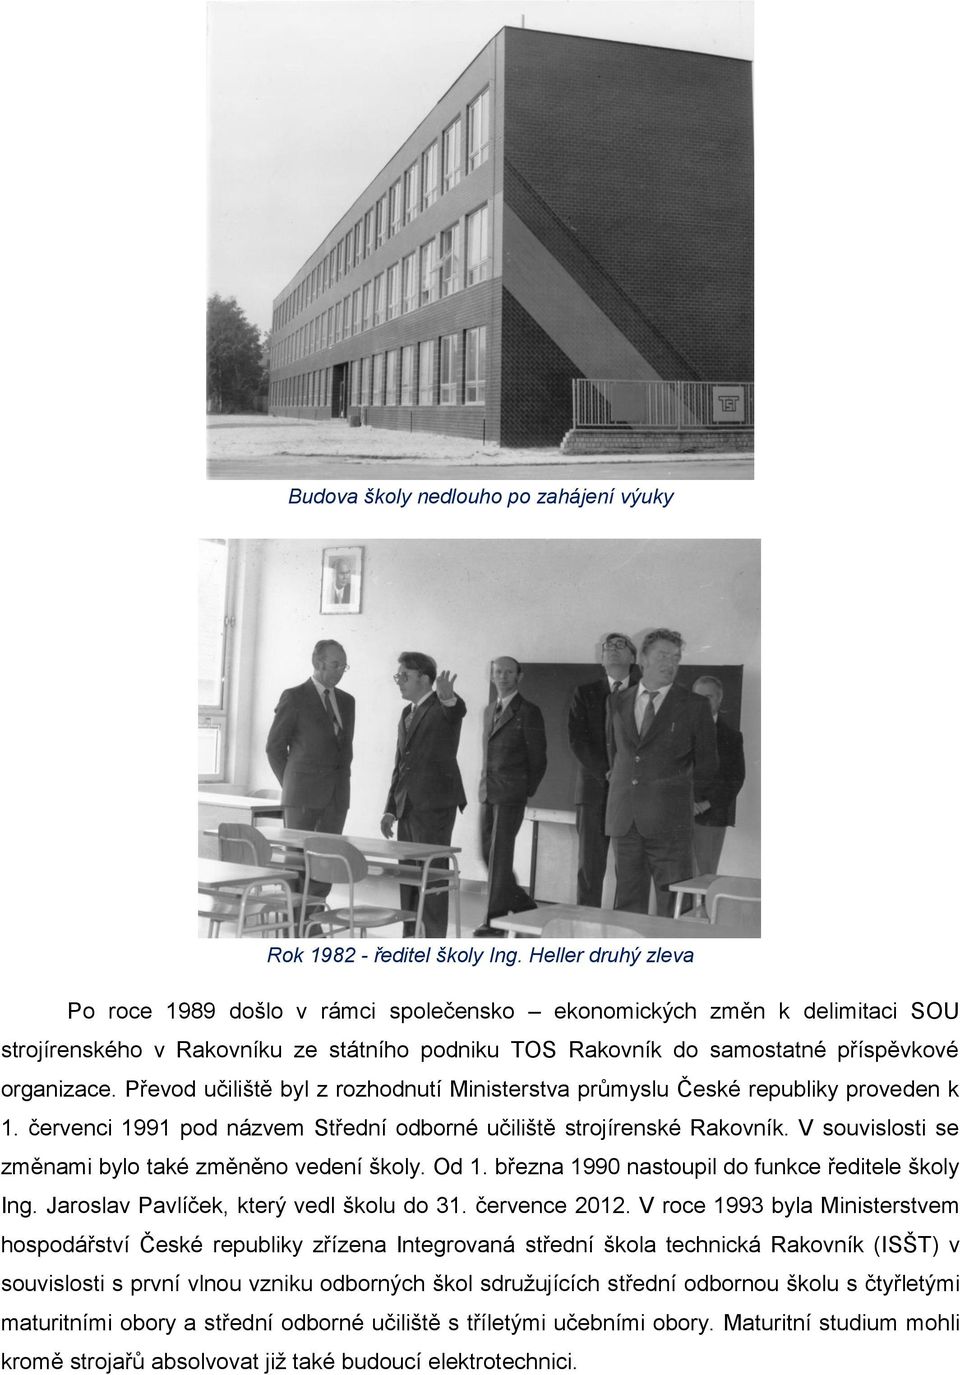 Převod učiliště byl z rozhodnutí Ministerstva průmyslu České republiky proveden k 1. červenci 1991 pod názvem Střední odborné učiliště strojírenské Rakovník.